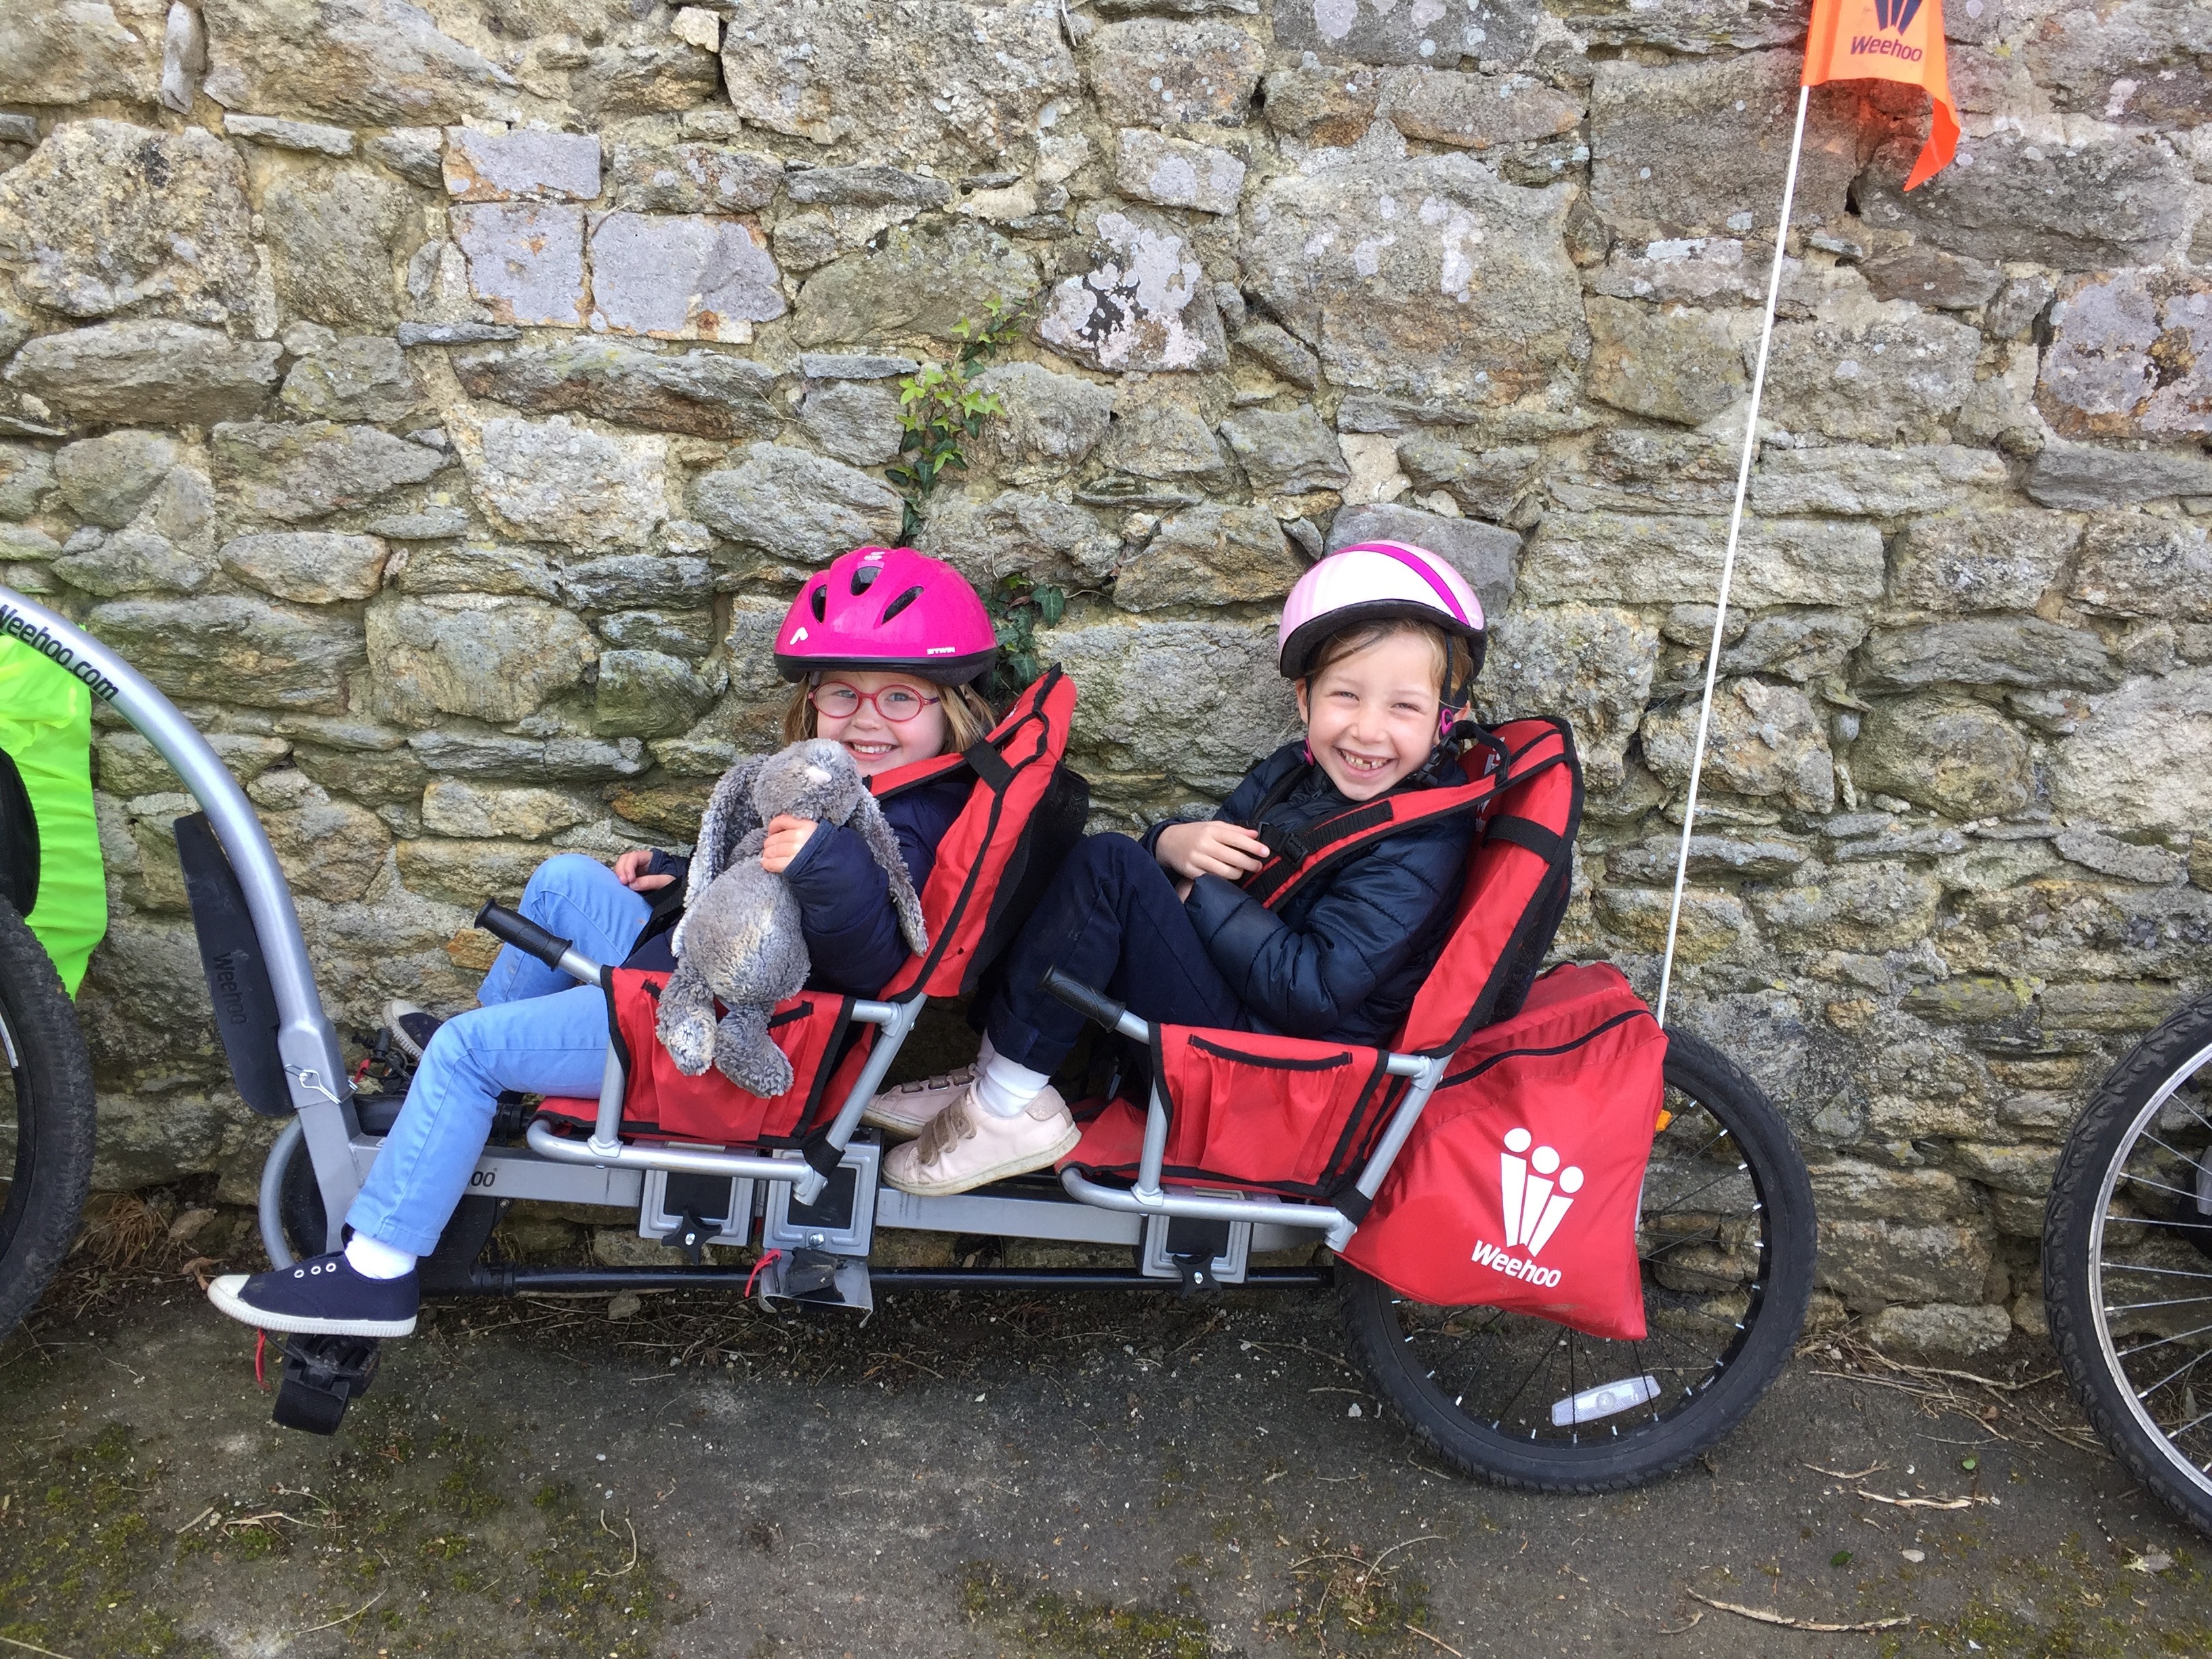 Remorque Weehoo pour voyager à vélo avec ses 2 enfants